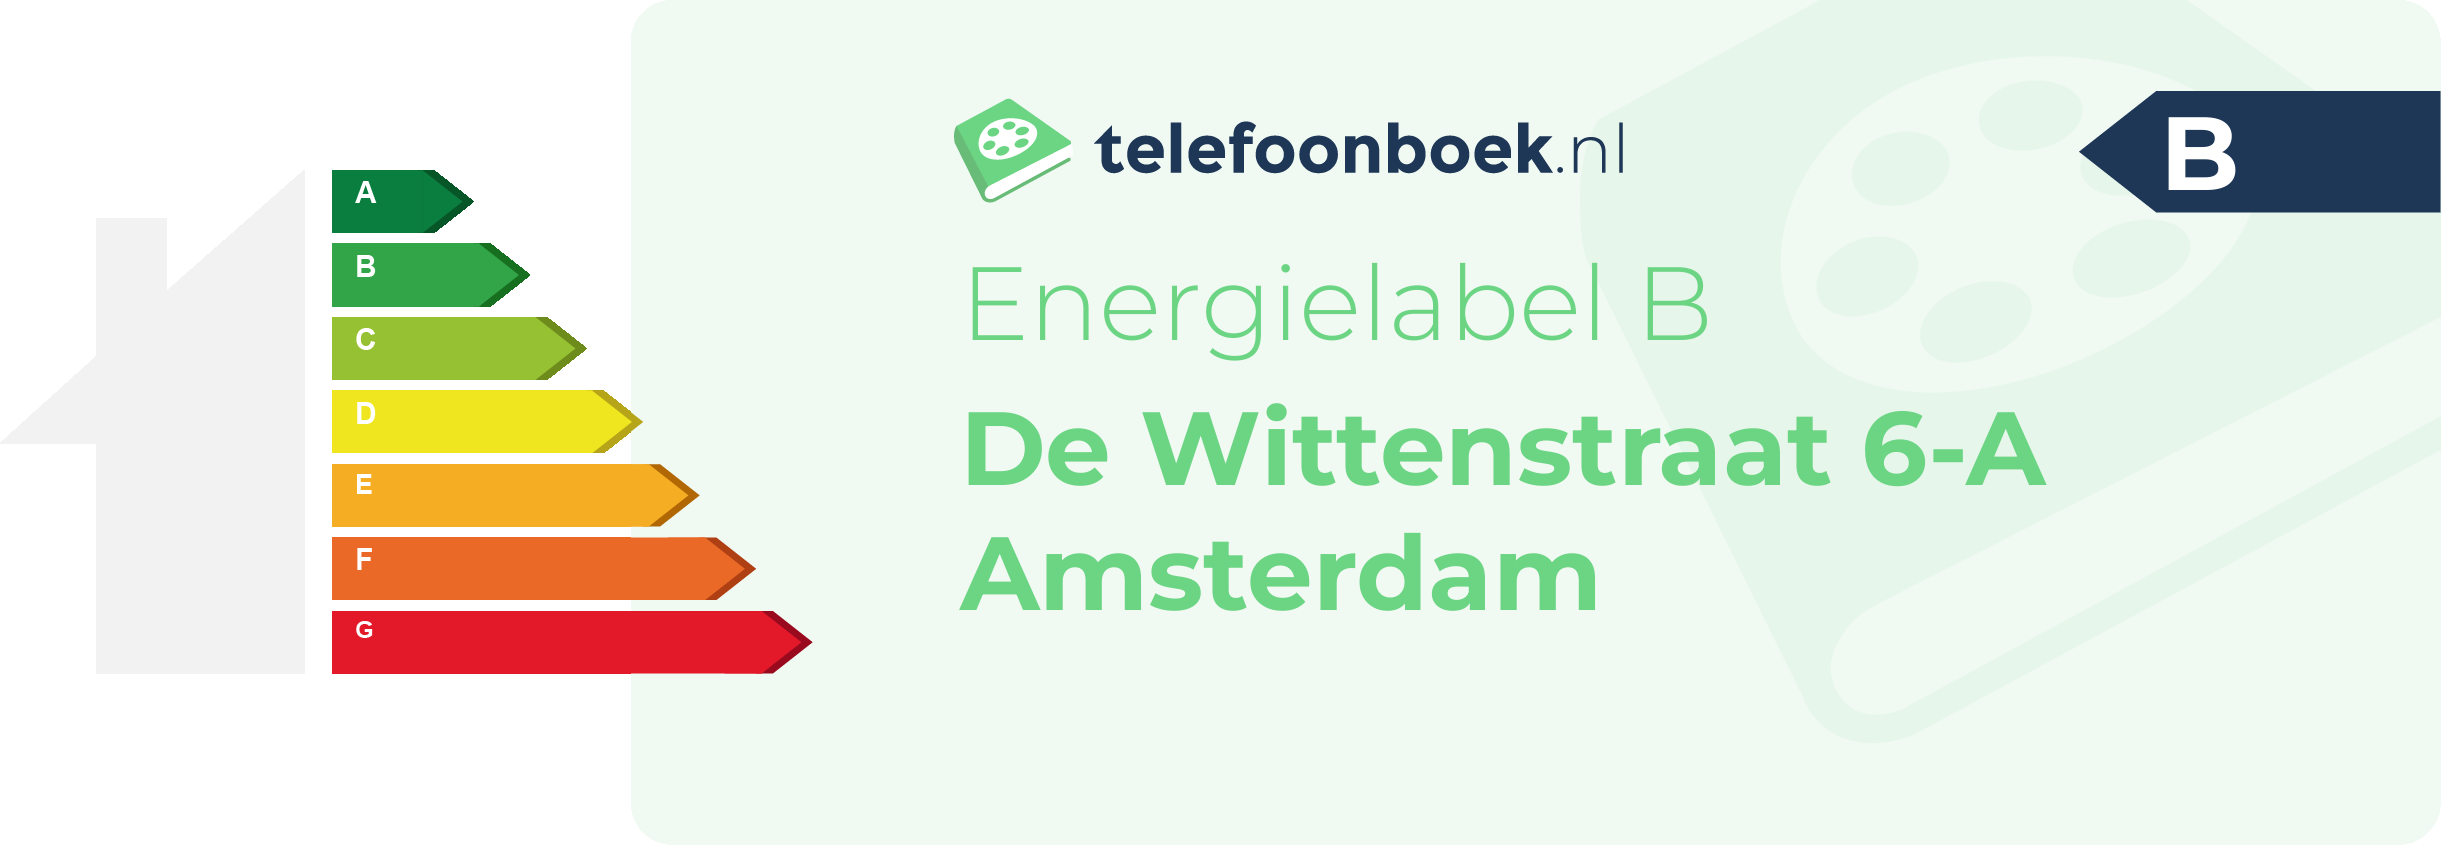 Energielabel De Wittenstraat 6-A Amsterdam